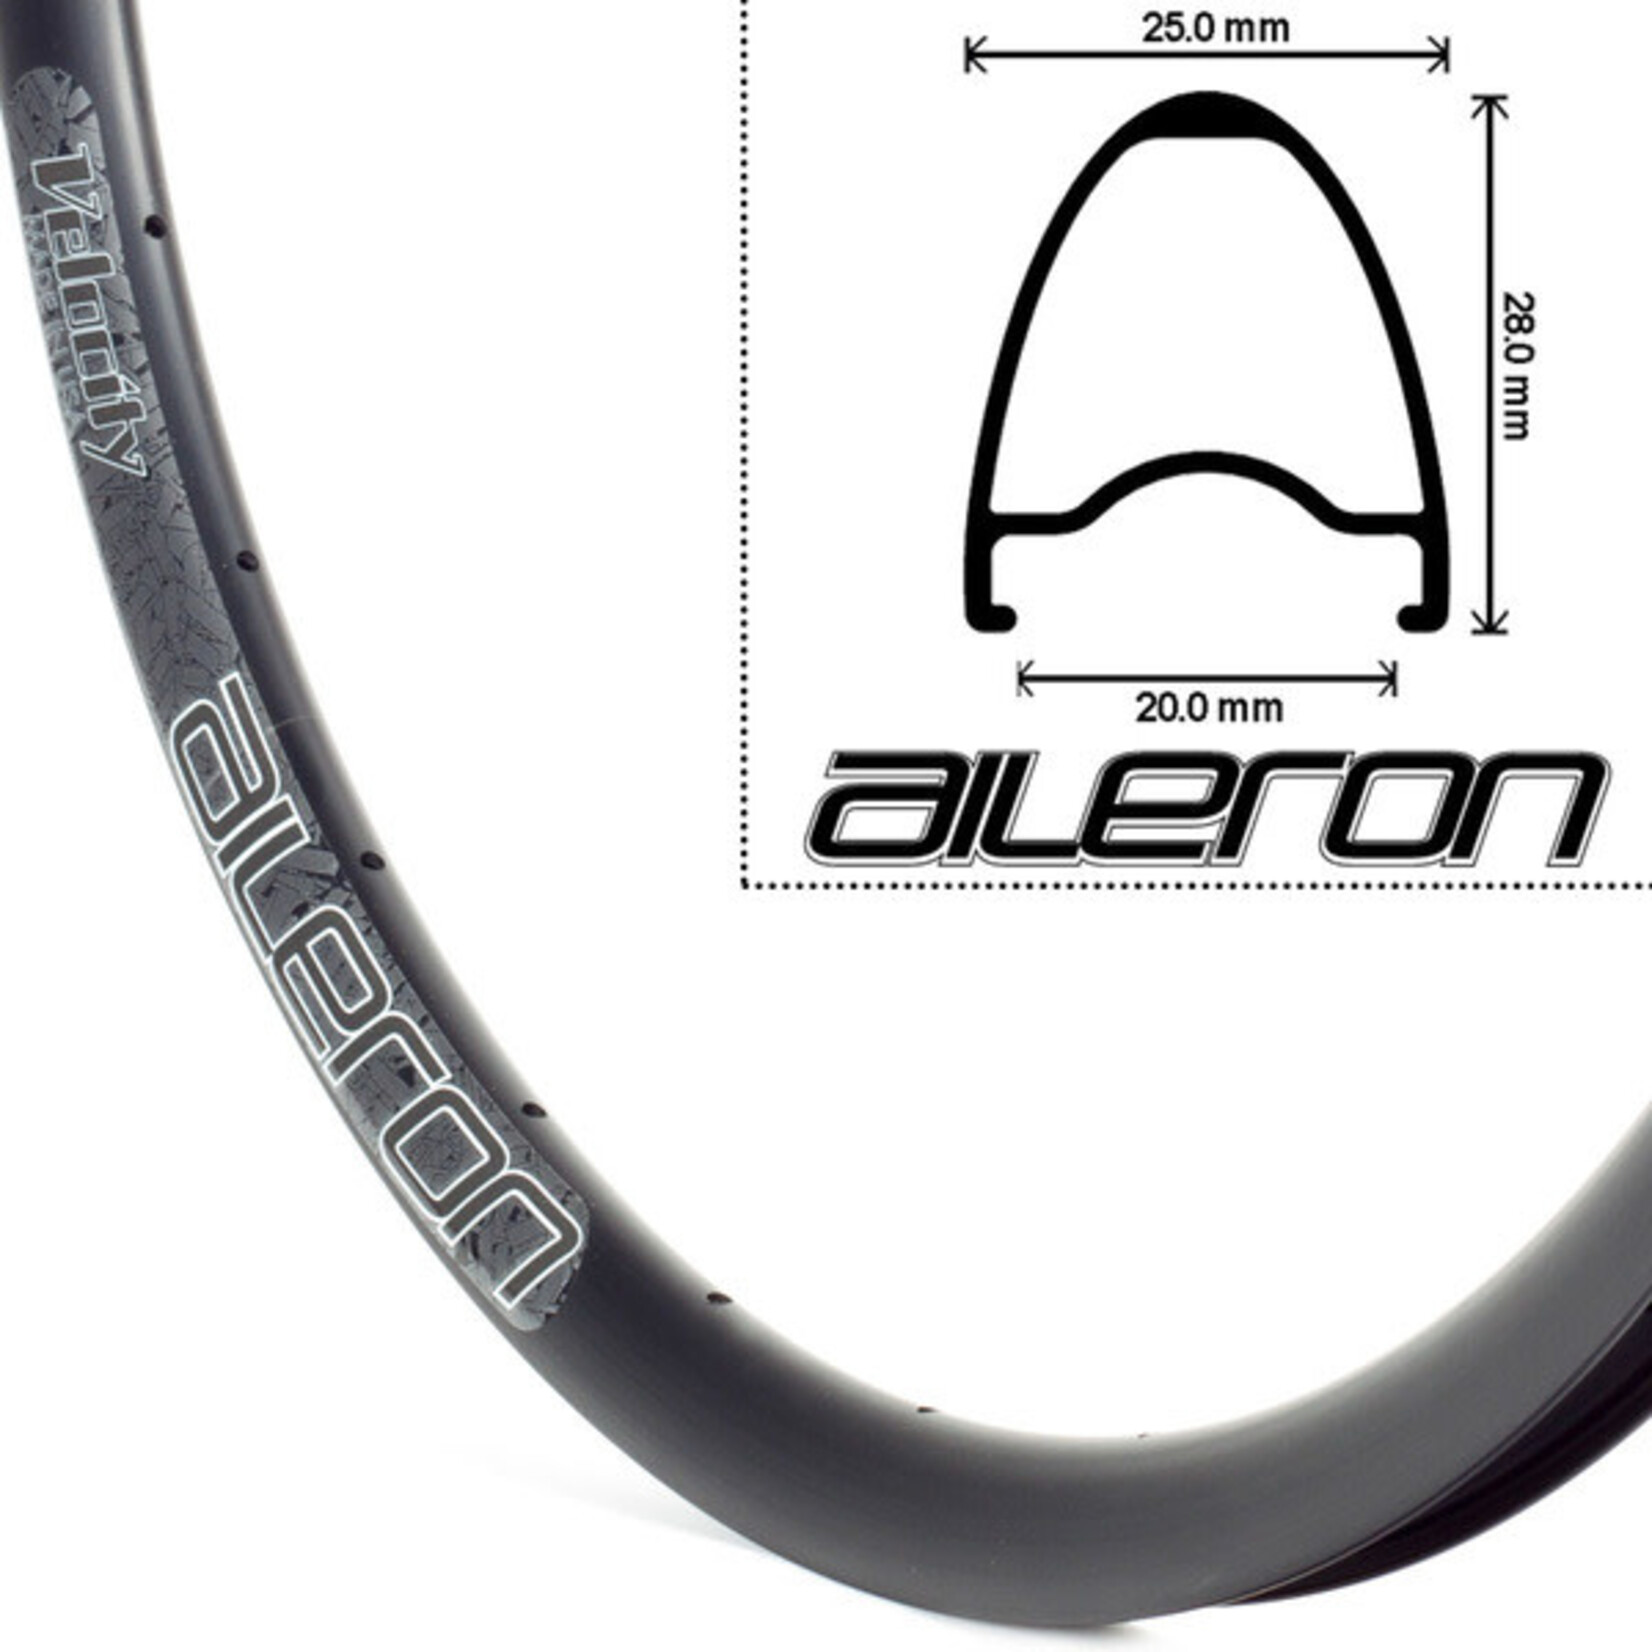 Velocity Velocity Aileron 700c Bicycle Rims - Black,32